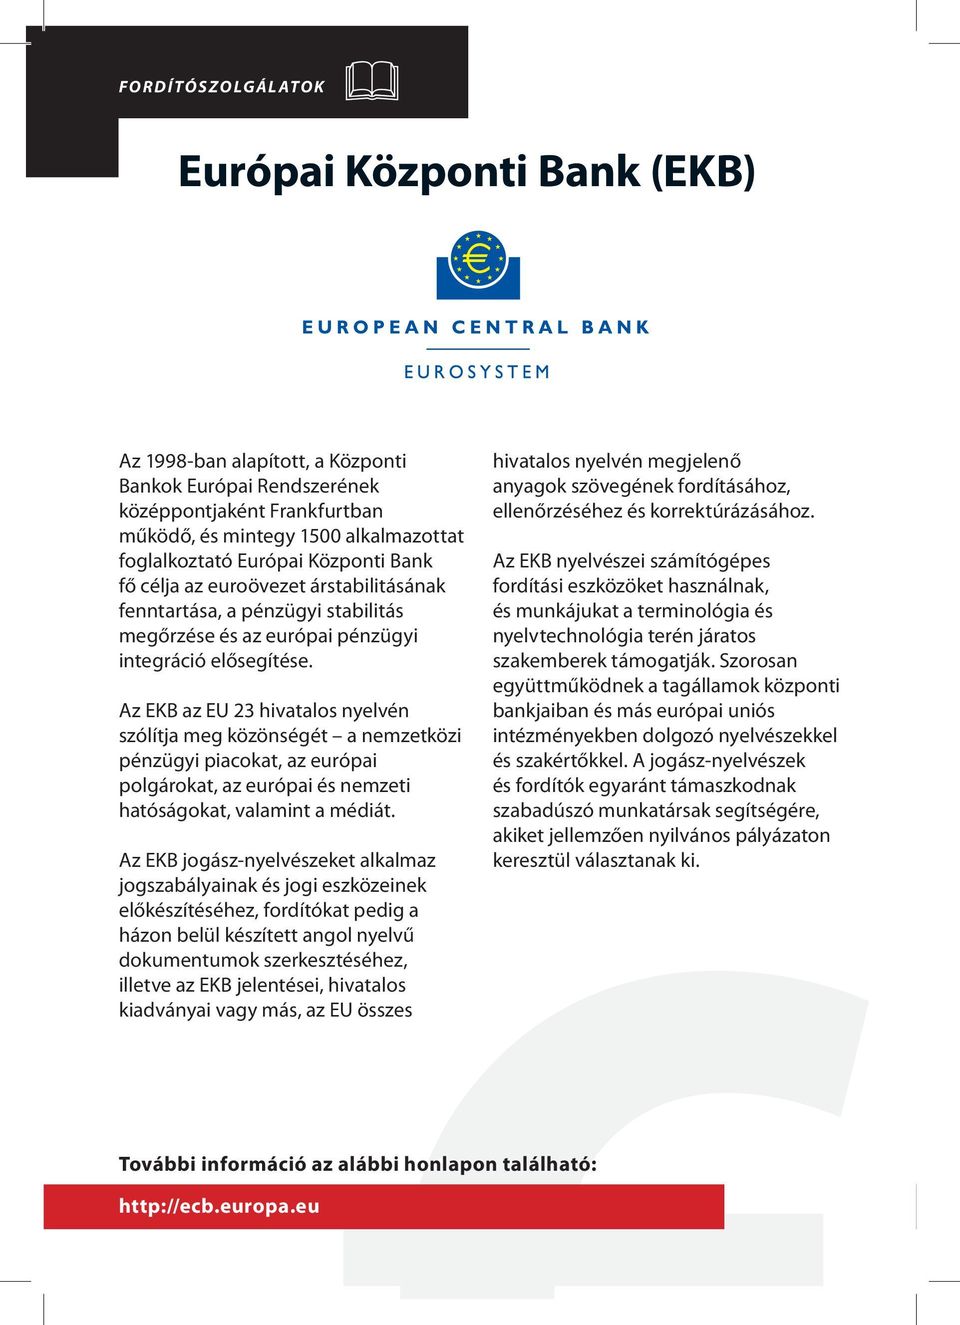 Az EKB az EU 23 hivatalos nyelvén szólítja meg közönségét a nemzetközi pénzügyi piacokat, az európai polgárokat, az európai és nemzeti hatóságokat, valamint a médiát.